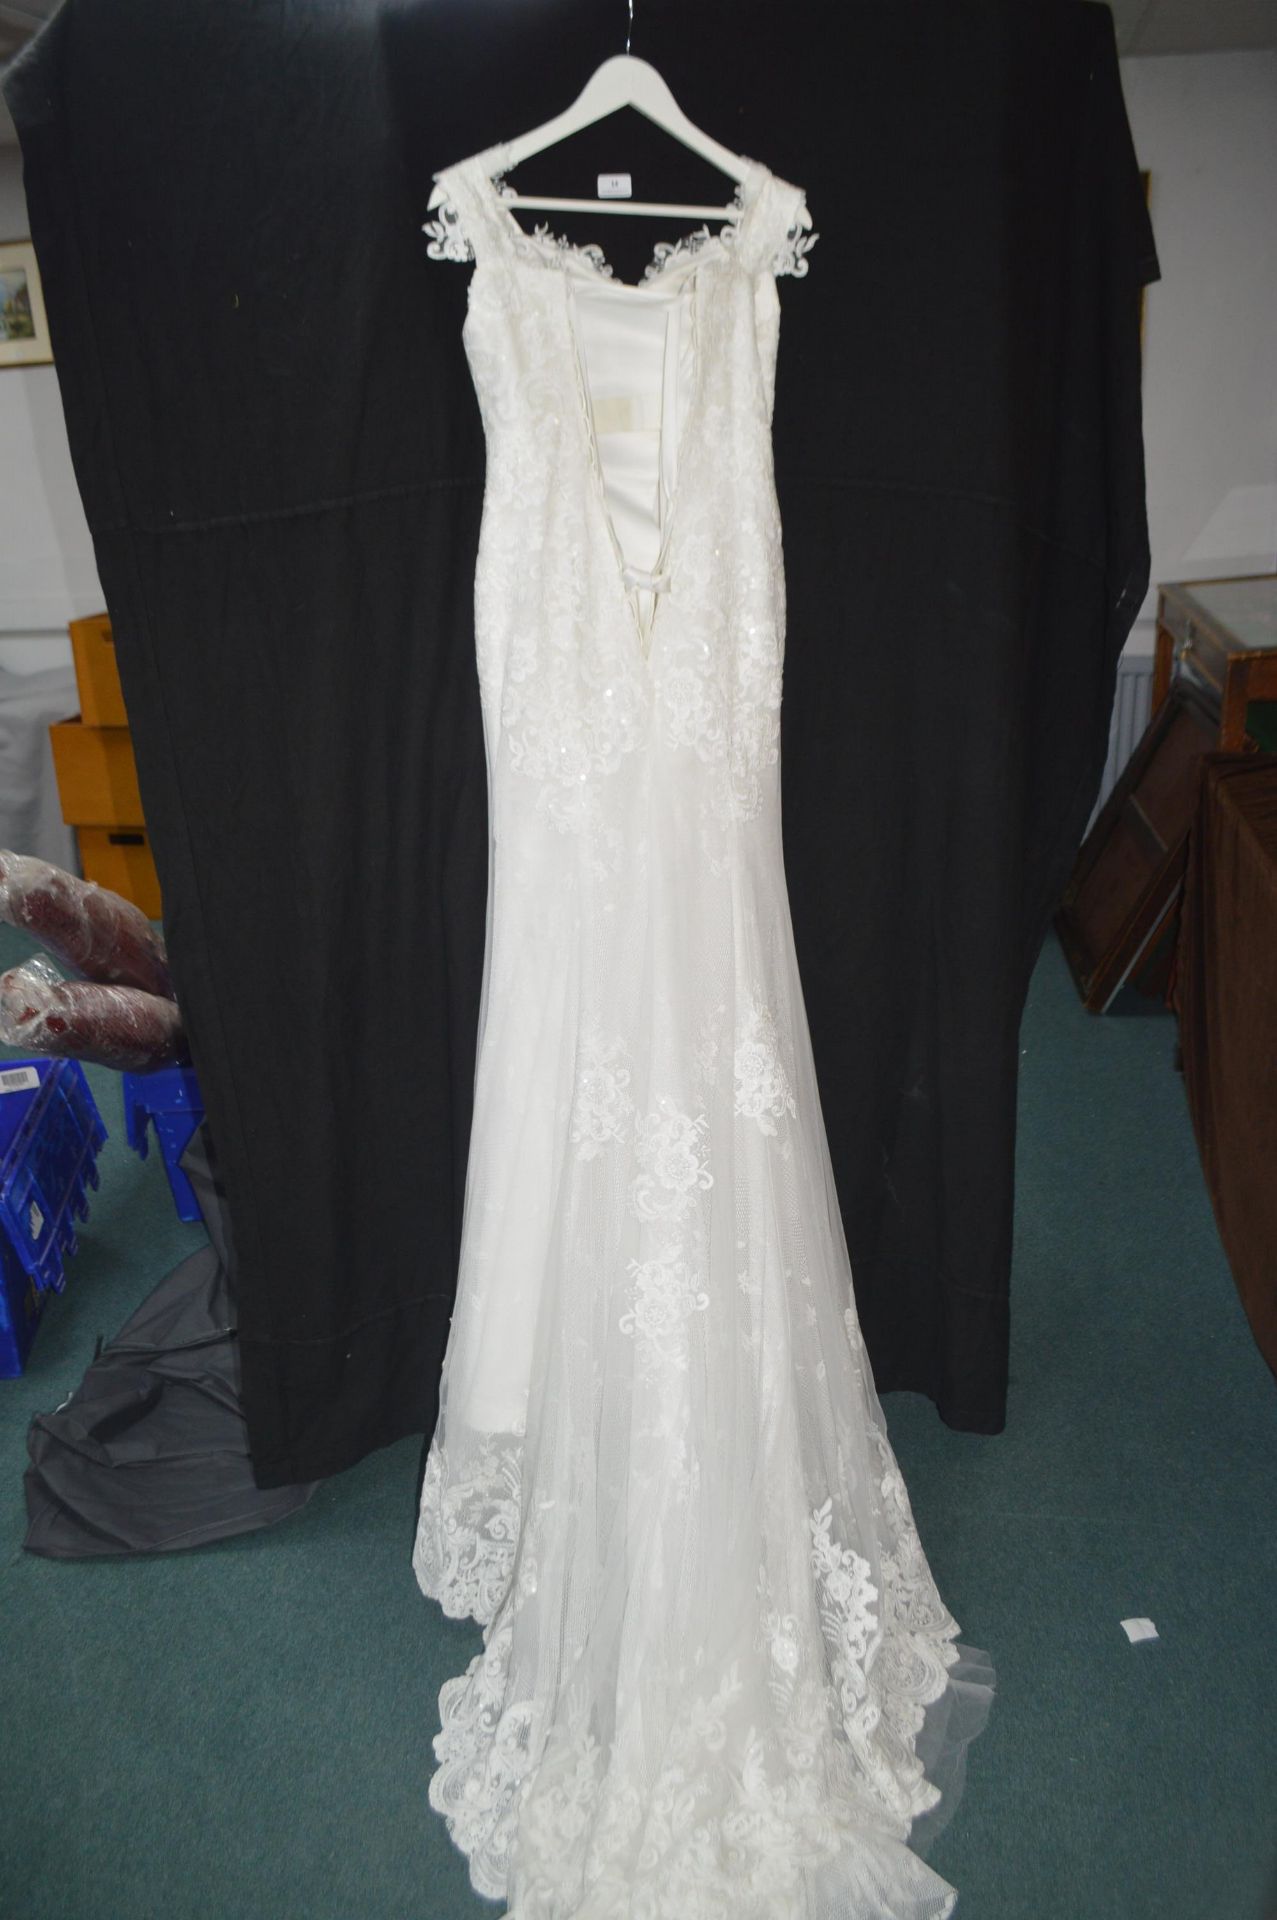 Victoria Kay Ivory Wedding Dress Size: 14 - Image 2 of 2